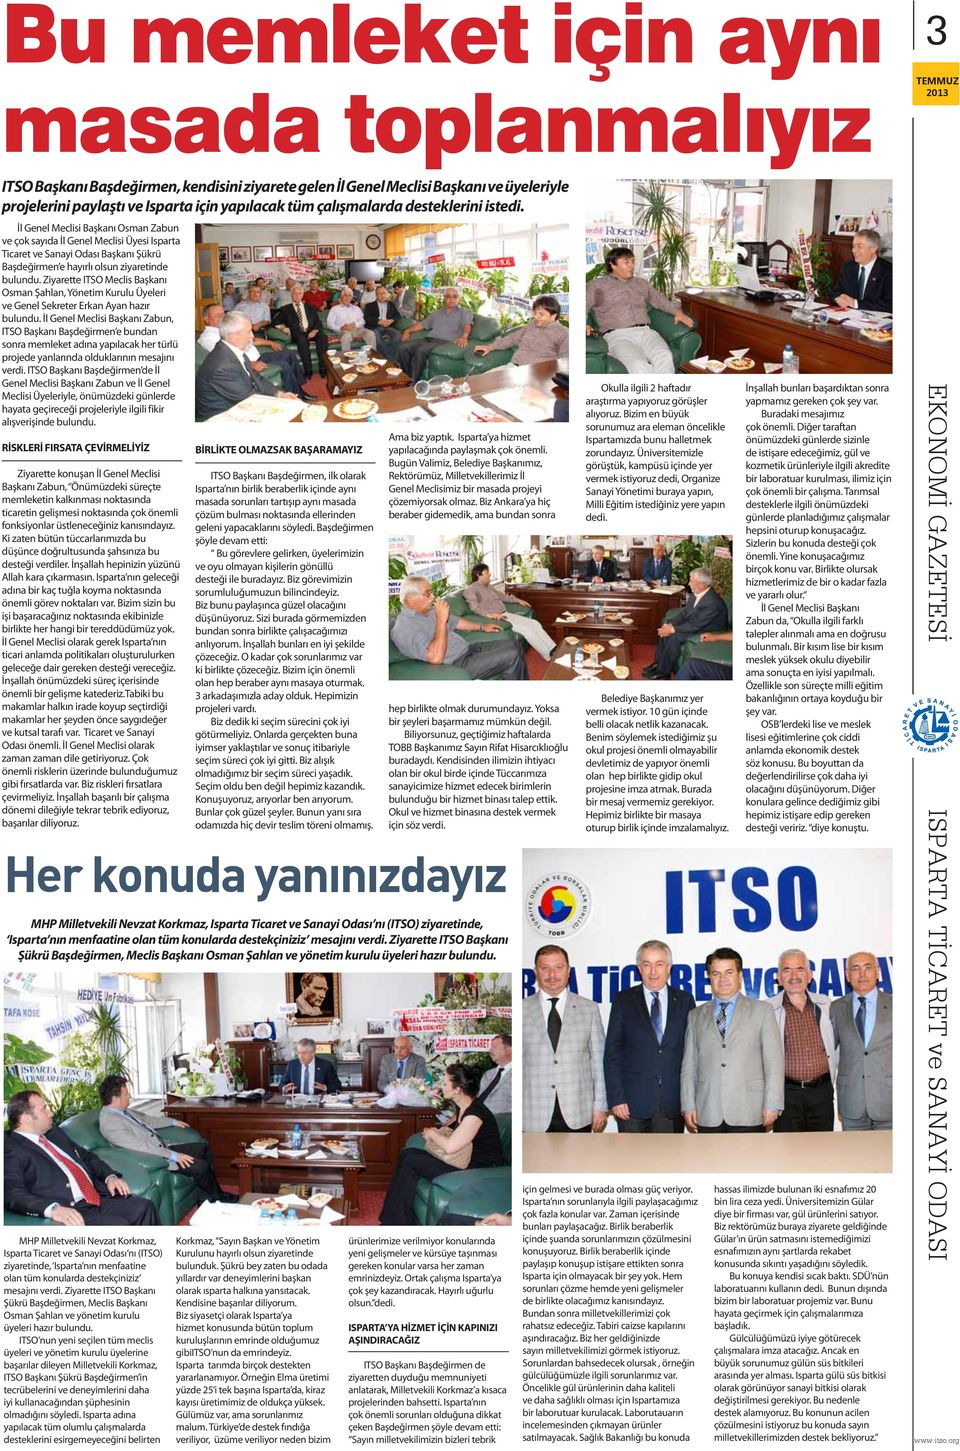 Ziyarette ITSO Meclis Başkanı Osman Şahlan, Yönetim Kurulu Üyeleri ve Genel Sekreter Erkan Ayan hazır bulundu.